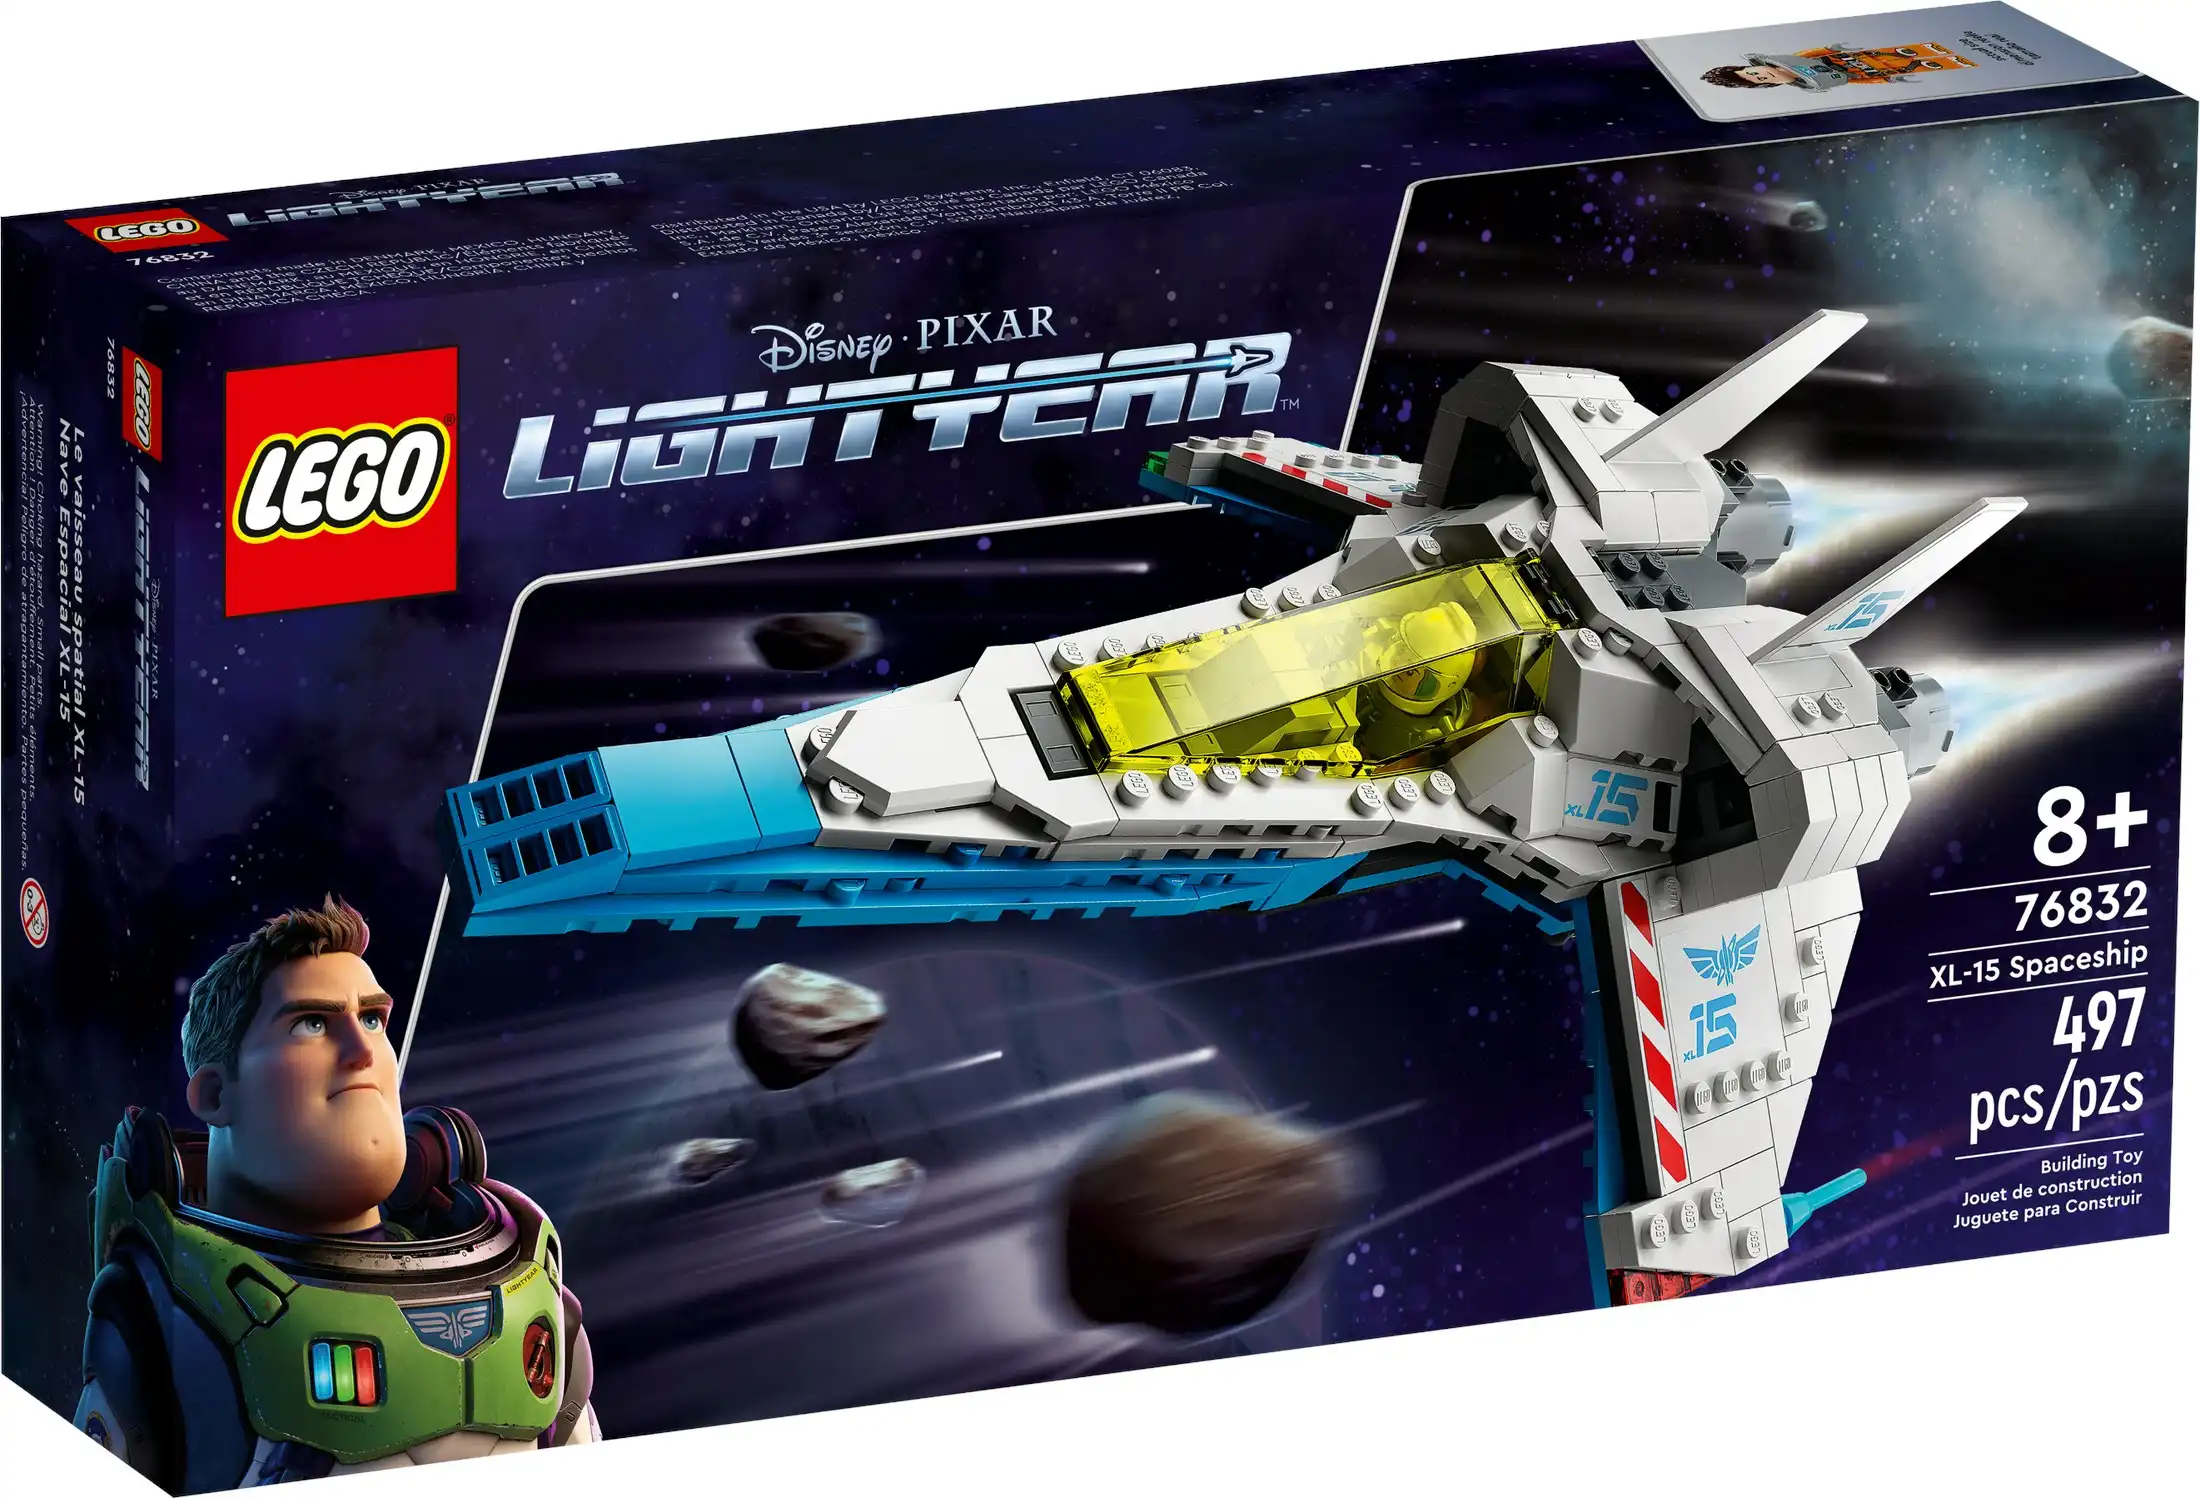 LEGO 76832 XL15 Spaceship - Buzz Lightyear Disney